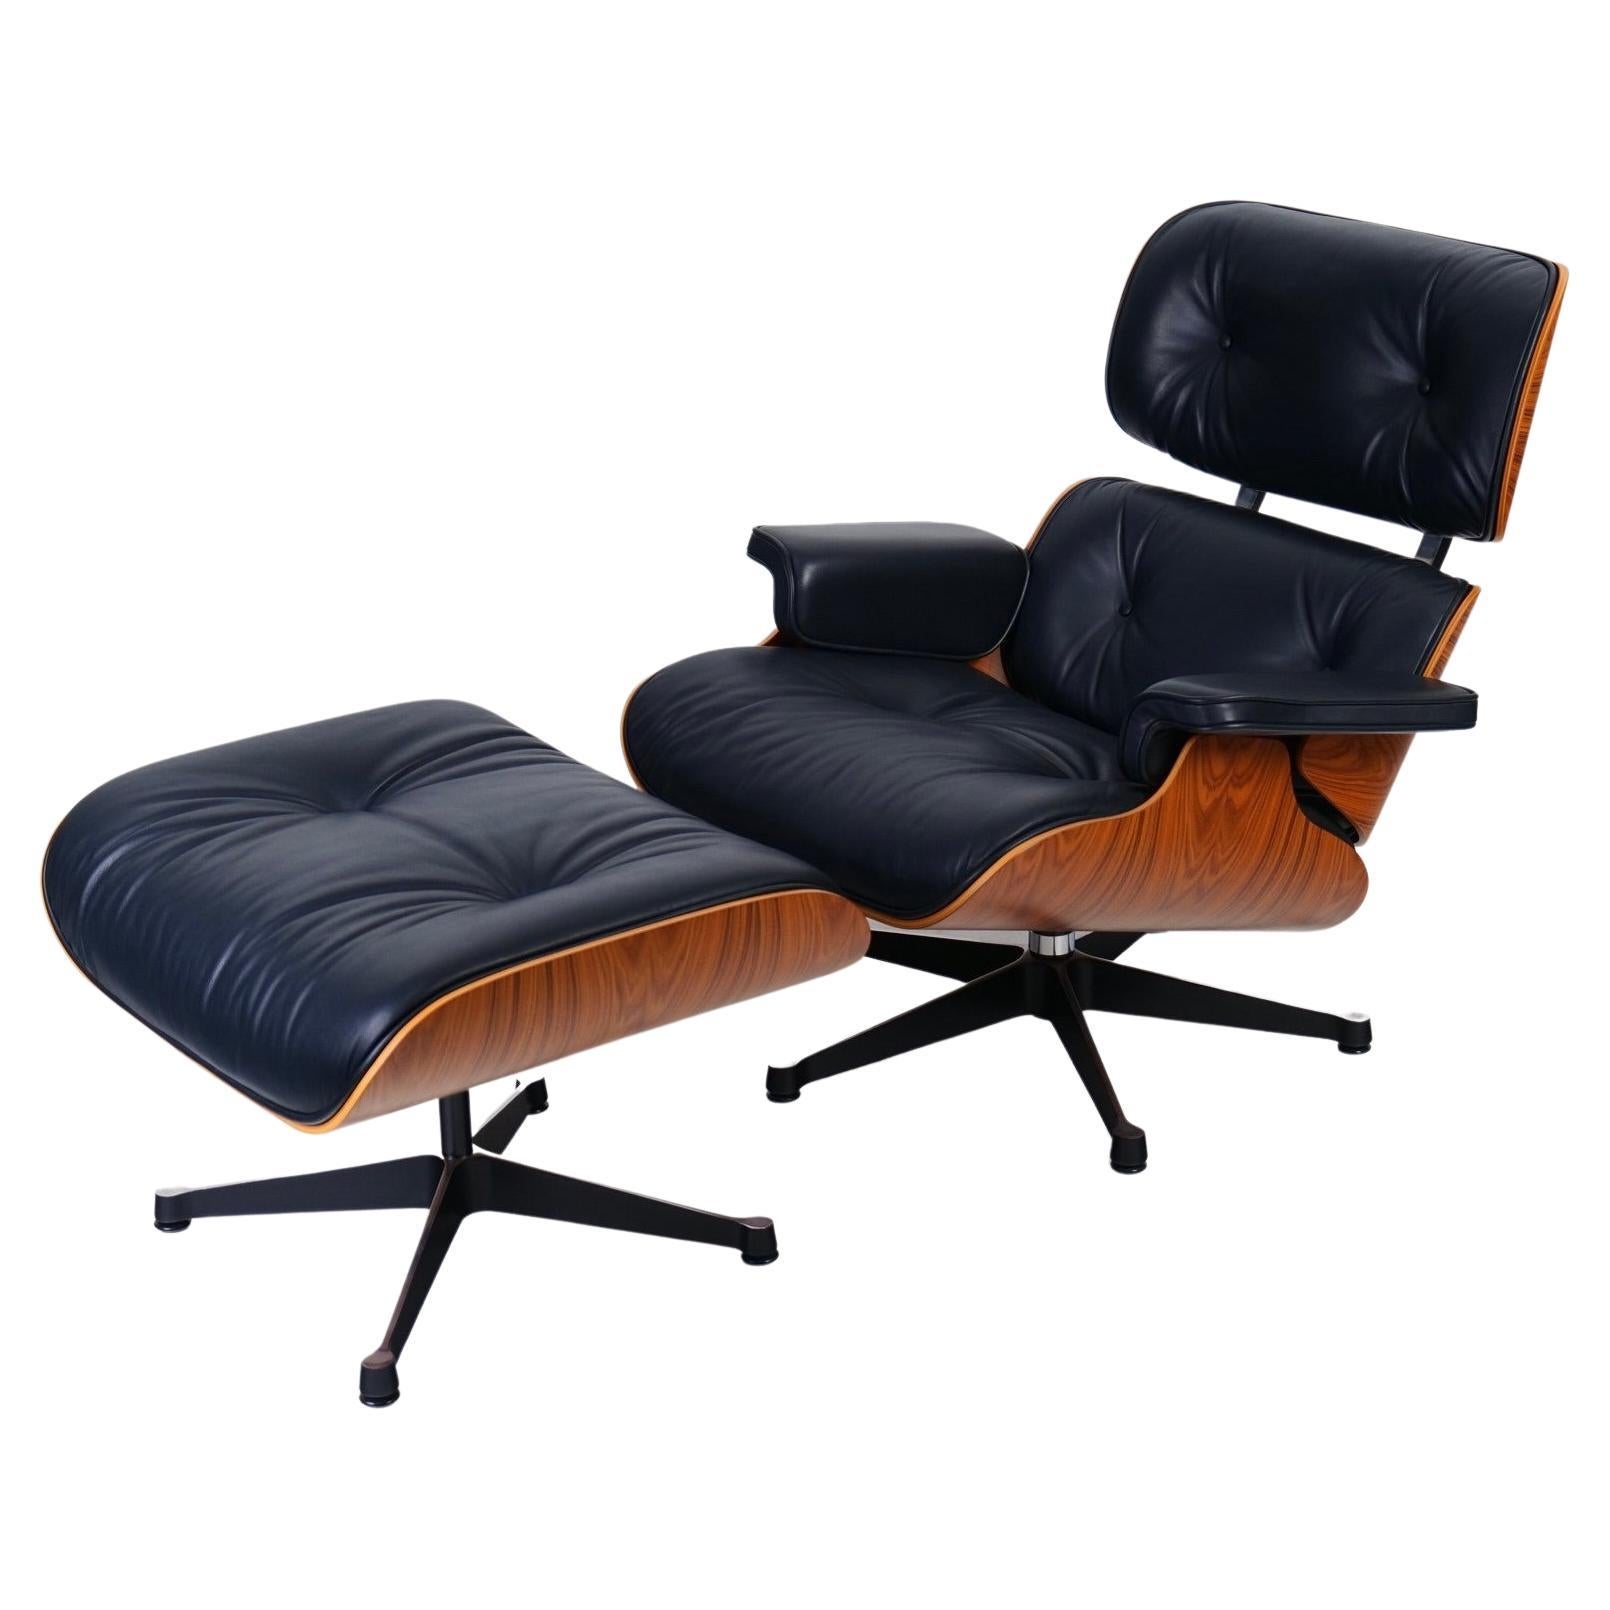 Chaise longue Eames n° 000/999 anniversaire des années 50, Vitra d'Herman Miller en vente